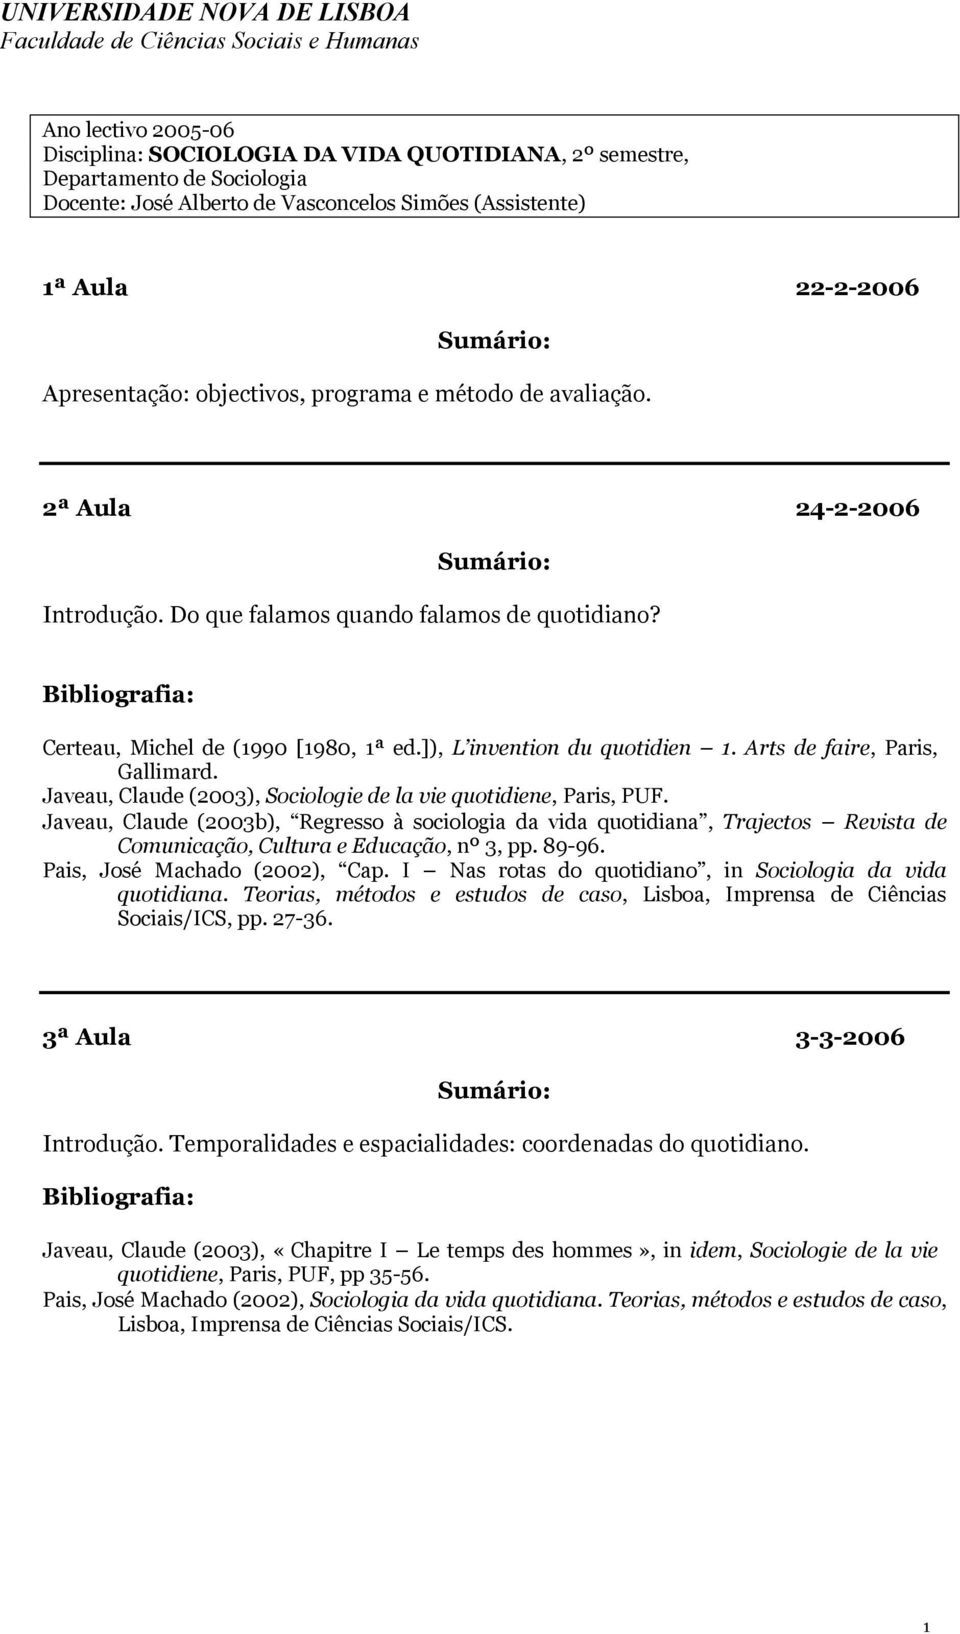 Javeau, Claude (2003b), Regresso à sociologia da vida quotidiana, Trajectos Revista de Comunicação, Cultura e Educação, nº 3, pp. 89-96. Pais, José Machado (2002), Cap.